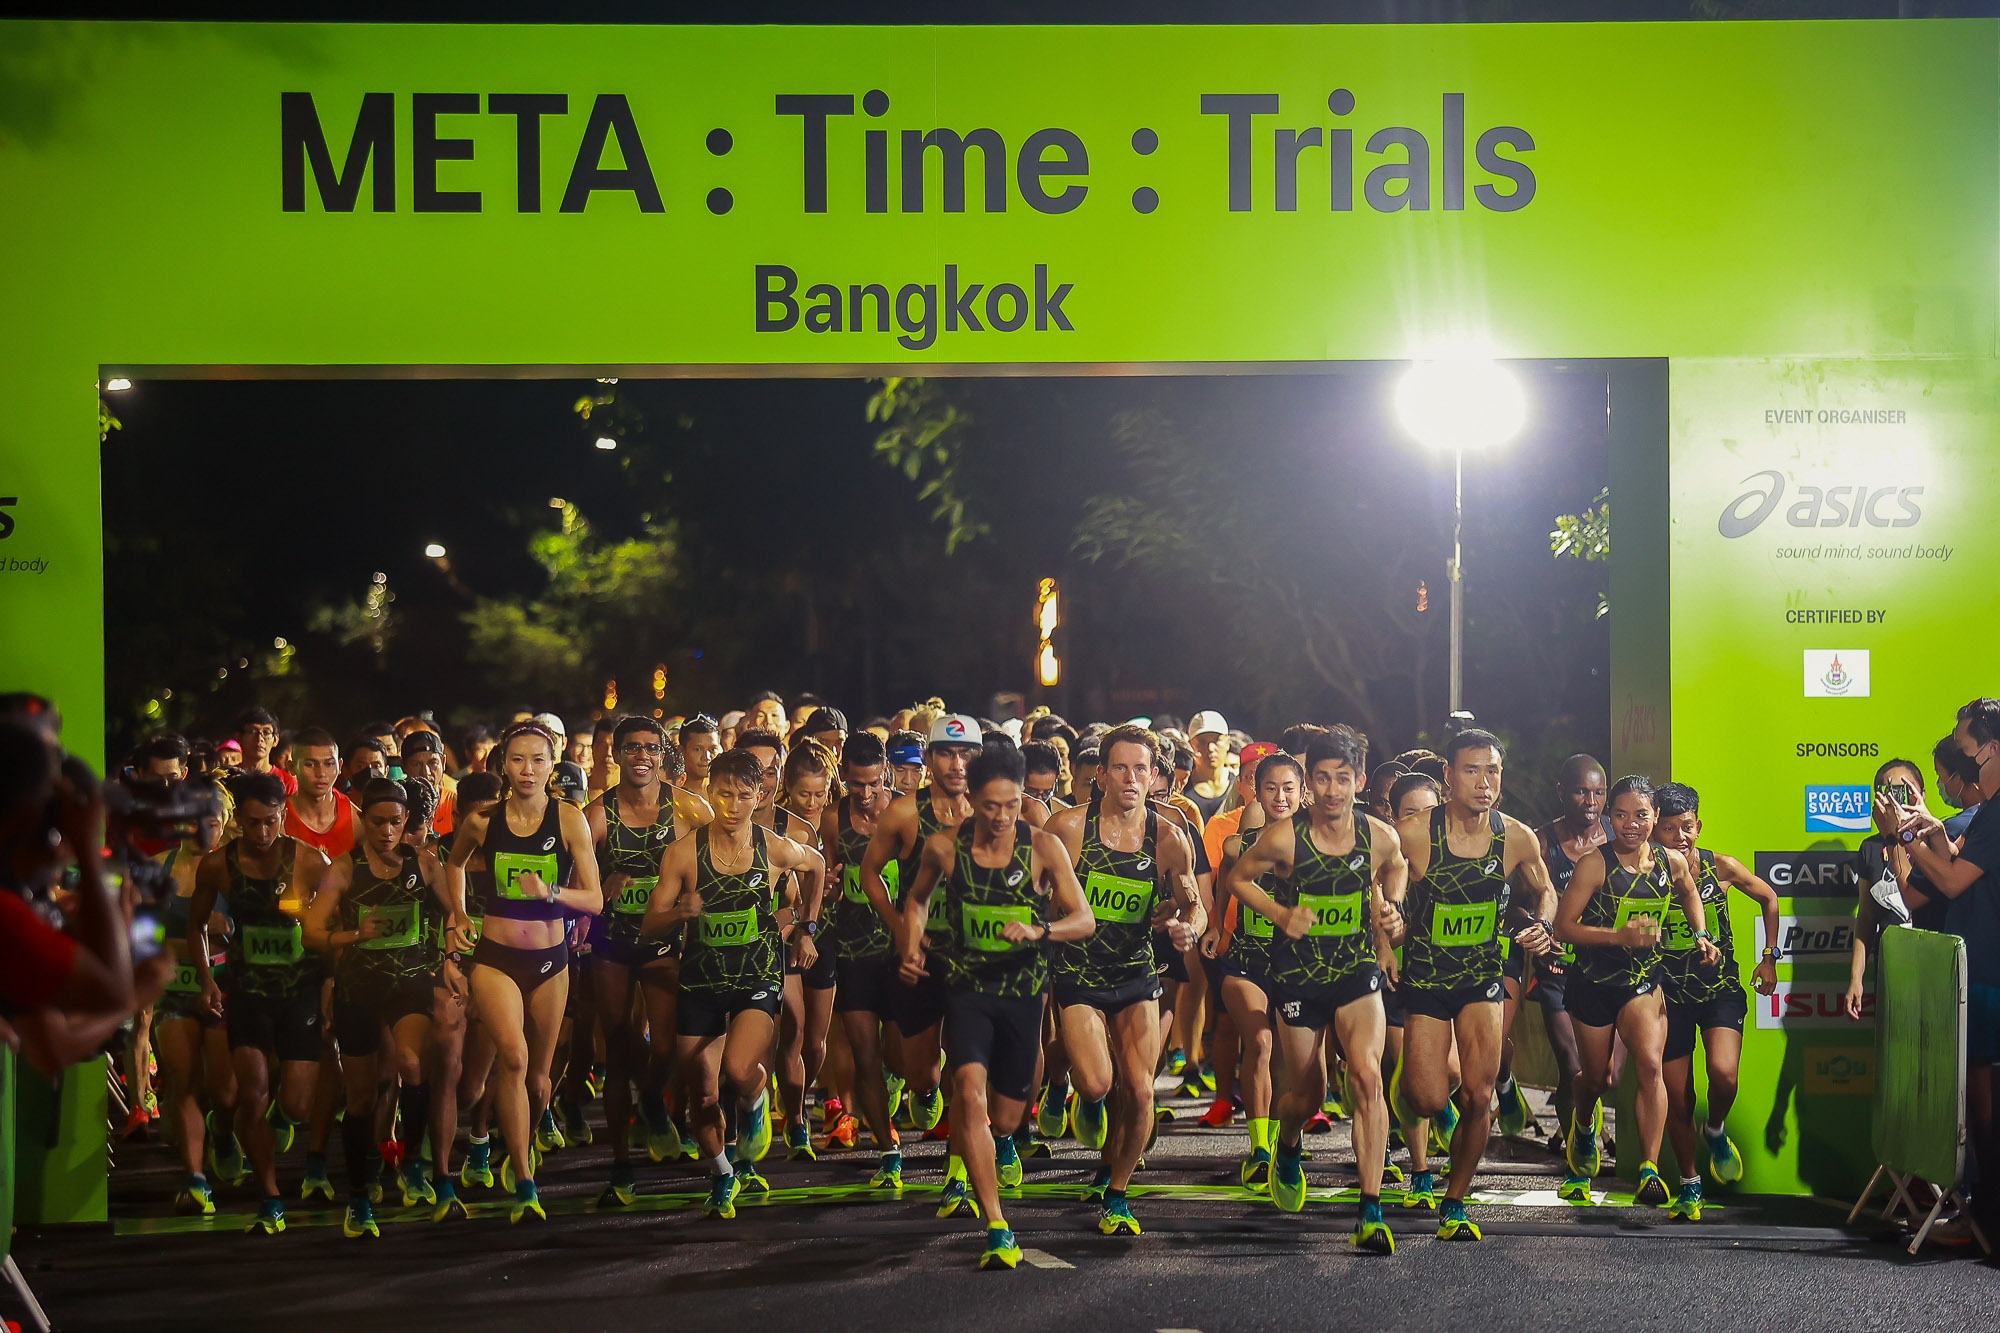 META Time Trials Bangkok Elite 02 Lâm Quang Nhật, Muhammad Ikbolasen và Tahira Najmunisaa Muhammad Zaid phá kỉ lục cá nhân tại Asics Meta : Time : Trials Bangkok